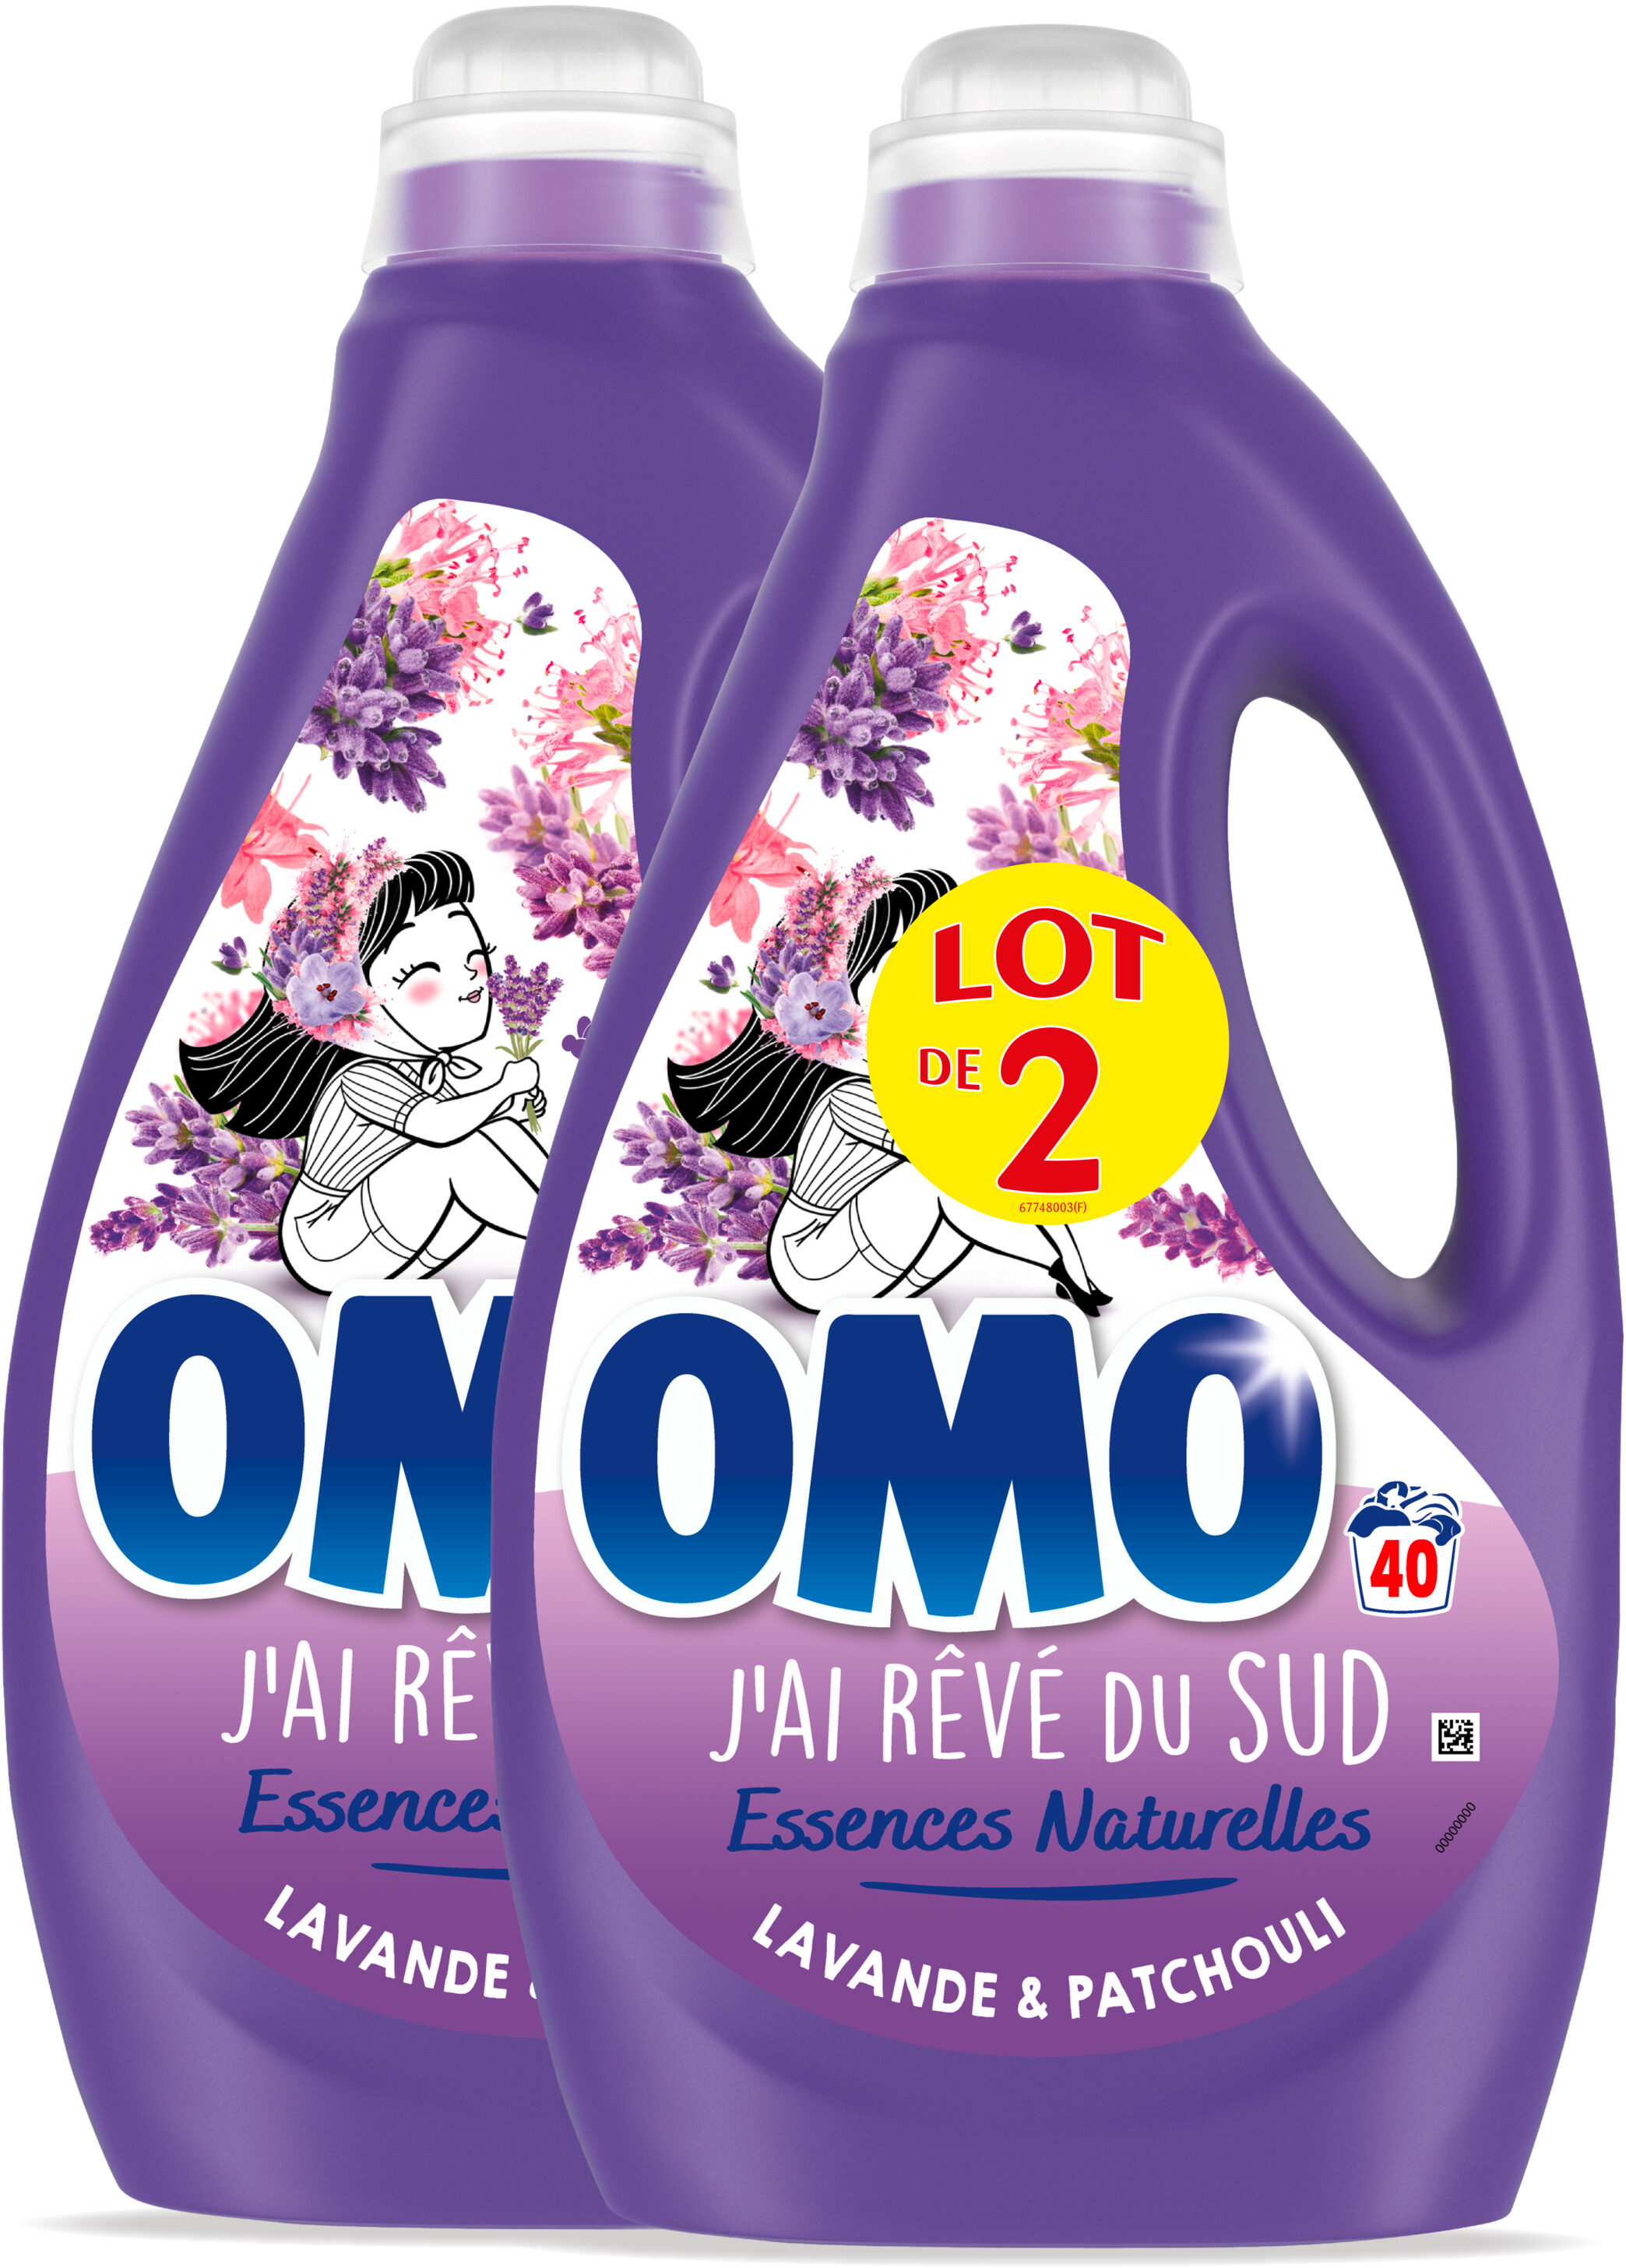 Omo Lessive Liquide Lavande & Patchouli 2l 40 Lavages Lot de 2 - Product - fr